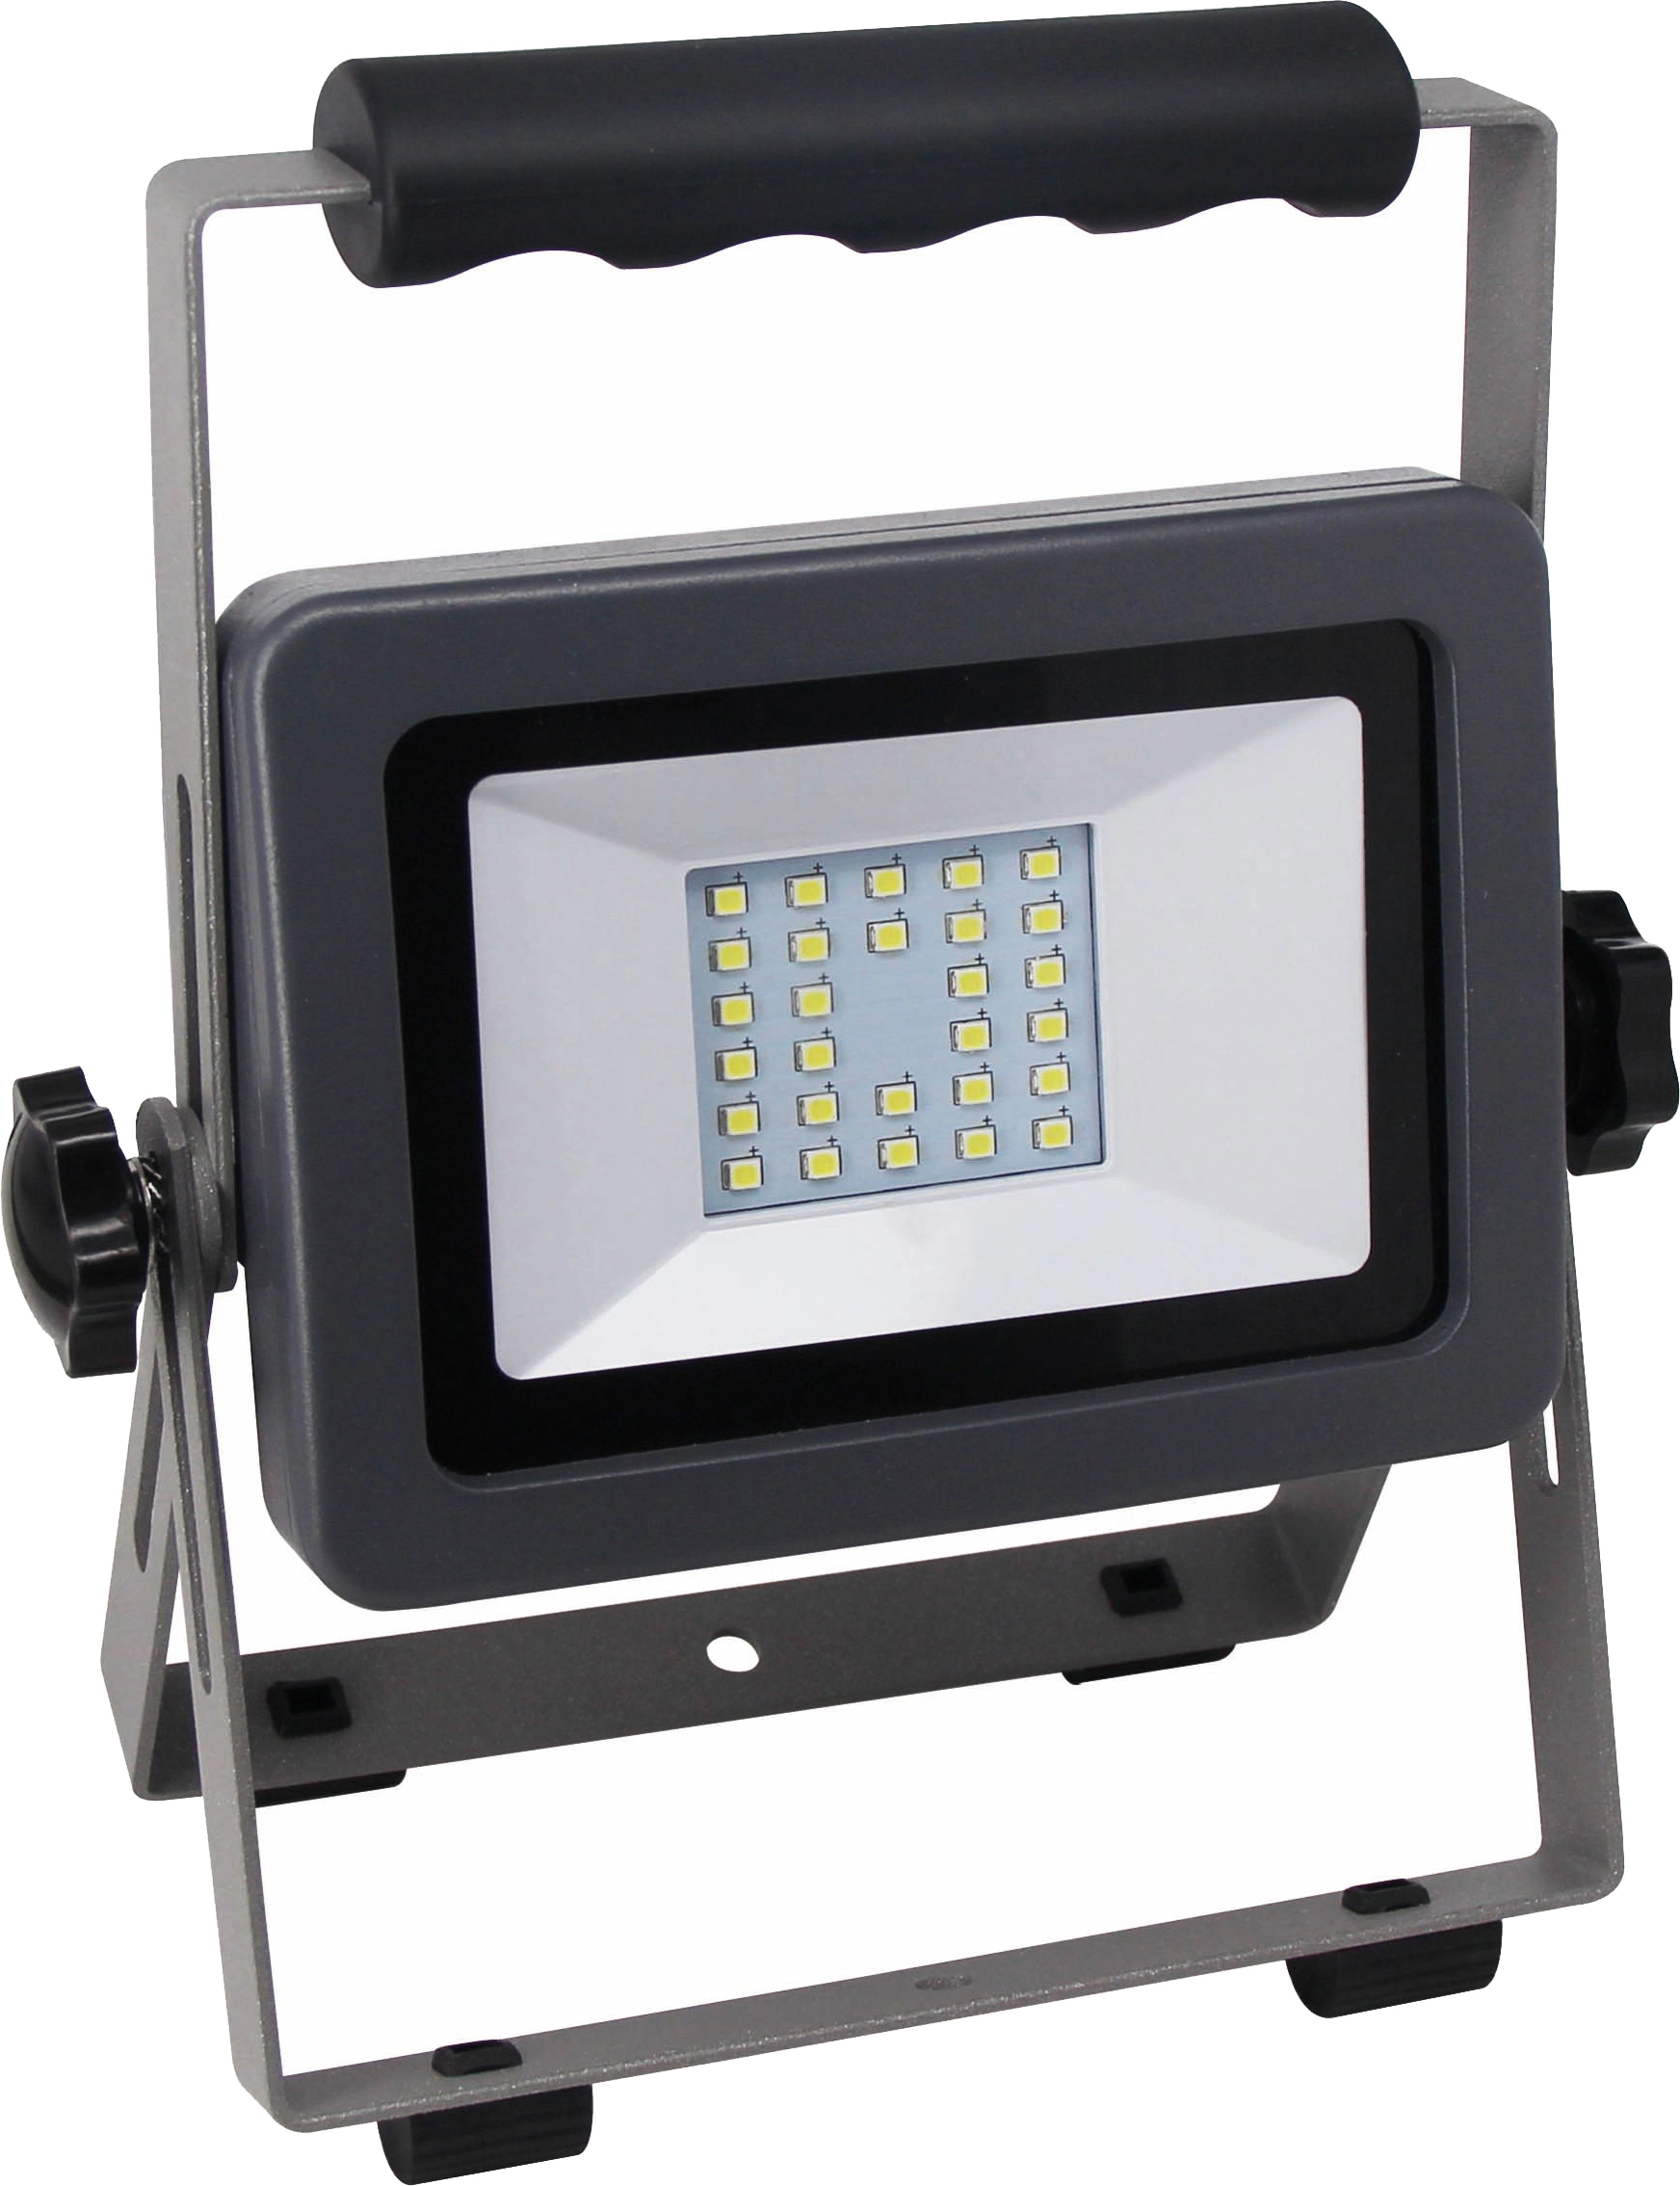 LED-Arbeitsleuchte Flare 20 W mit Ständer Silber-Anthrazit kaufen bei OBI